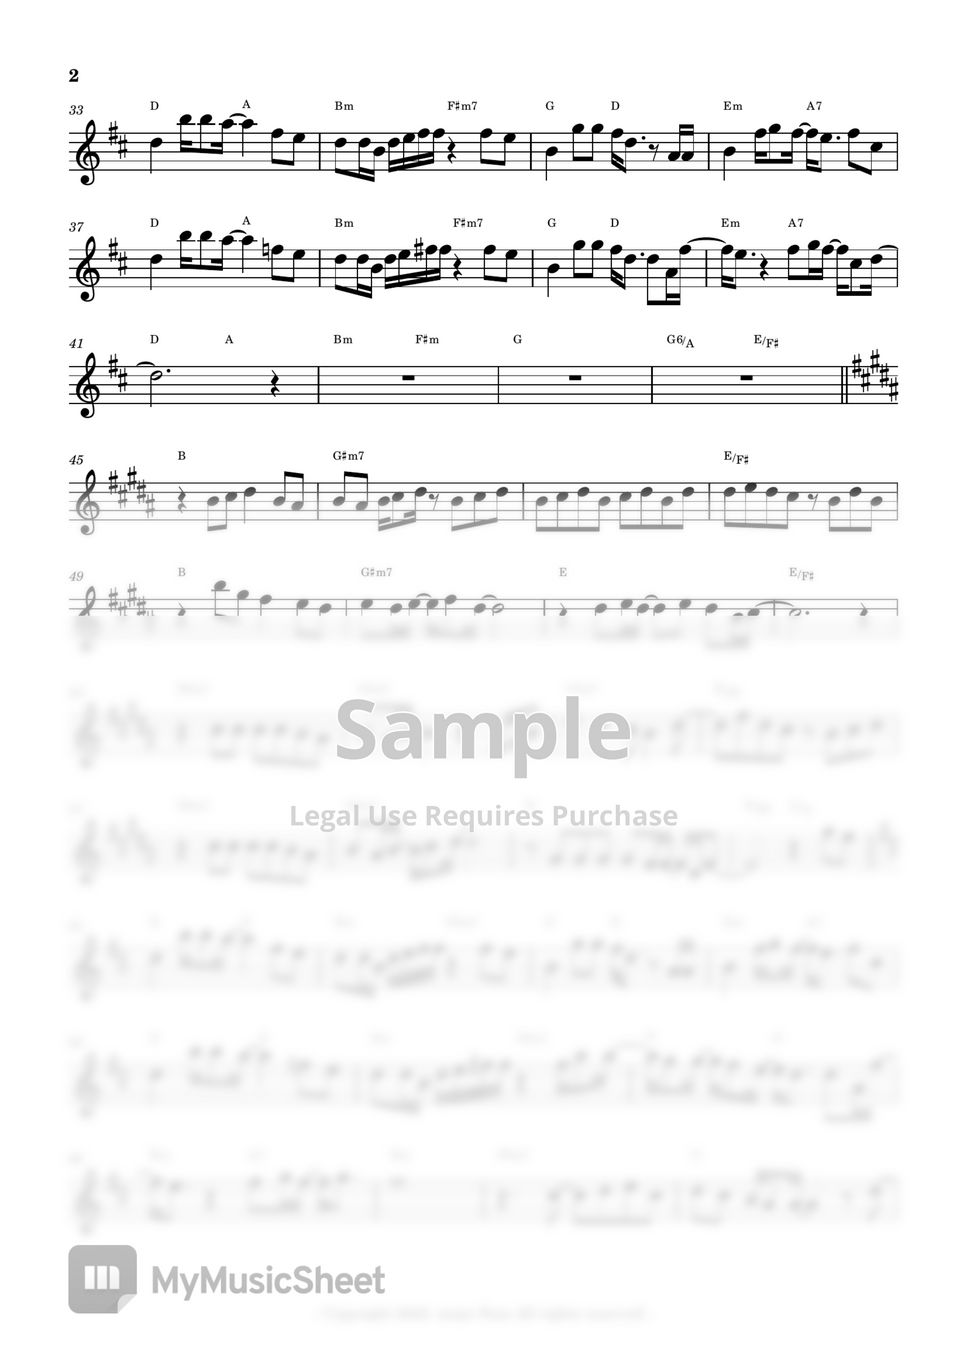 Lee Mujin 이무진 - Traffic Light 신호등 (Sheet Music Flute) by sonye flute